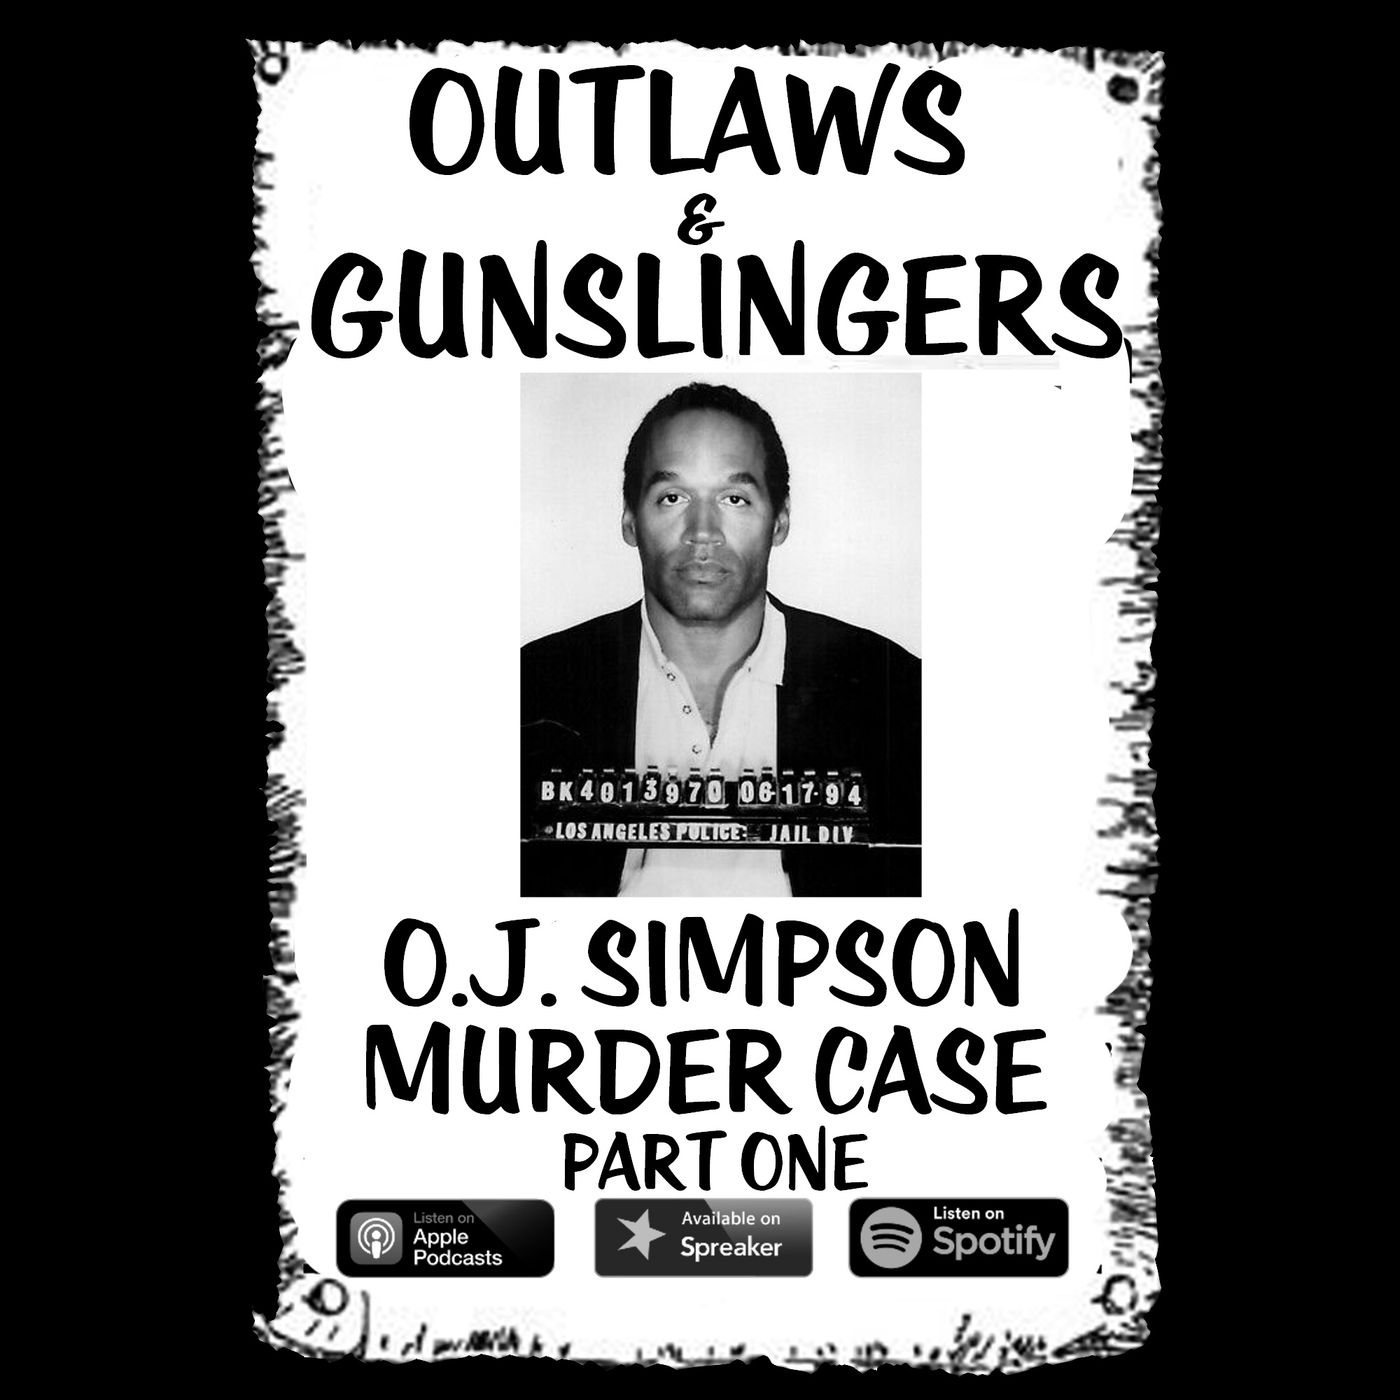 O.J. Simpson Murder Case Part One